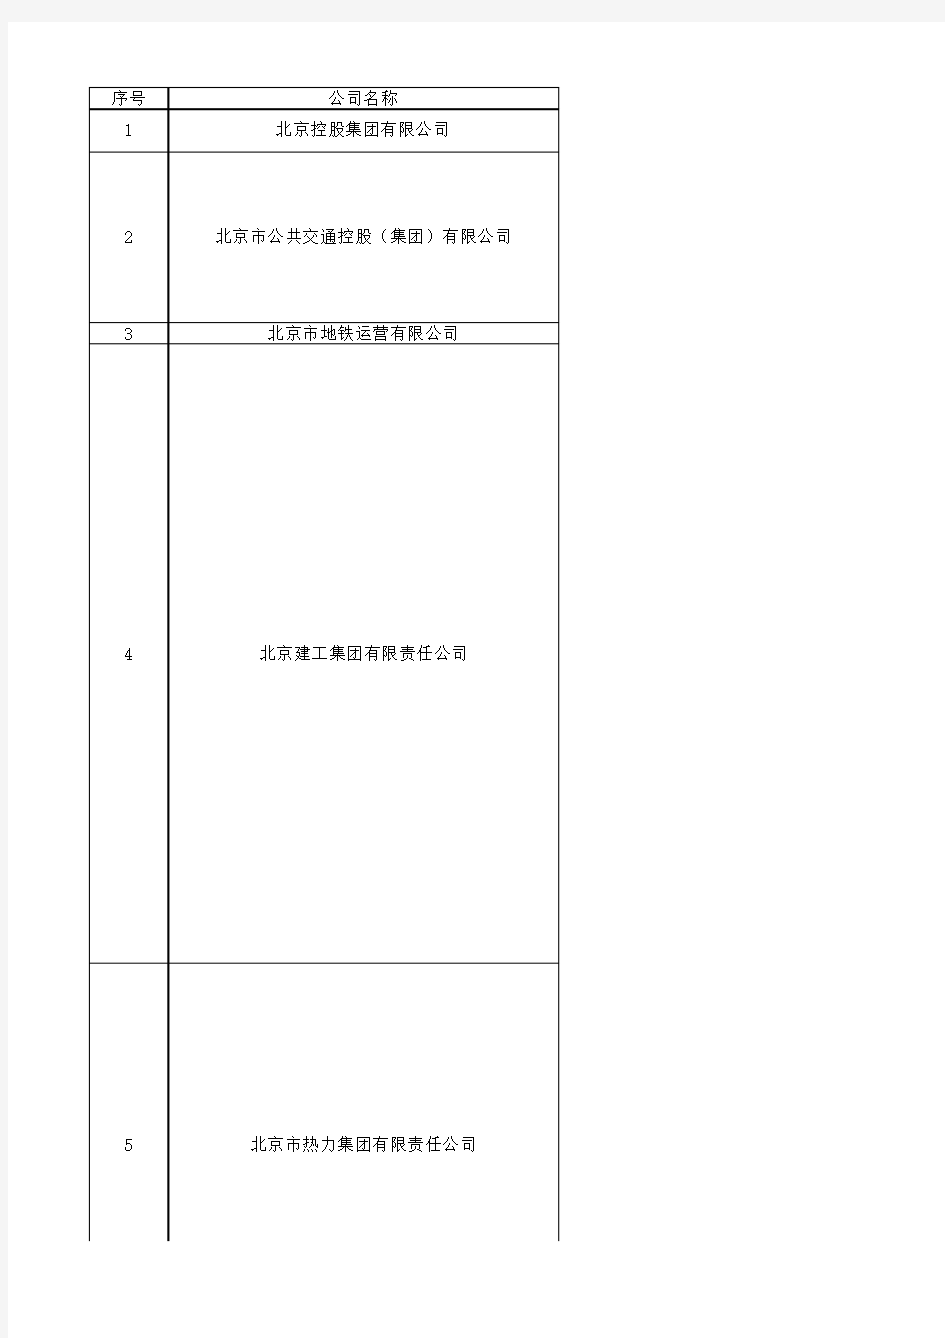 北京市国企名单 国资委下属企业名单(142家)